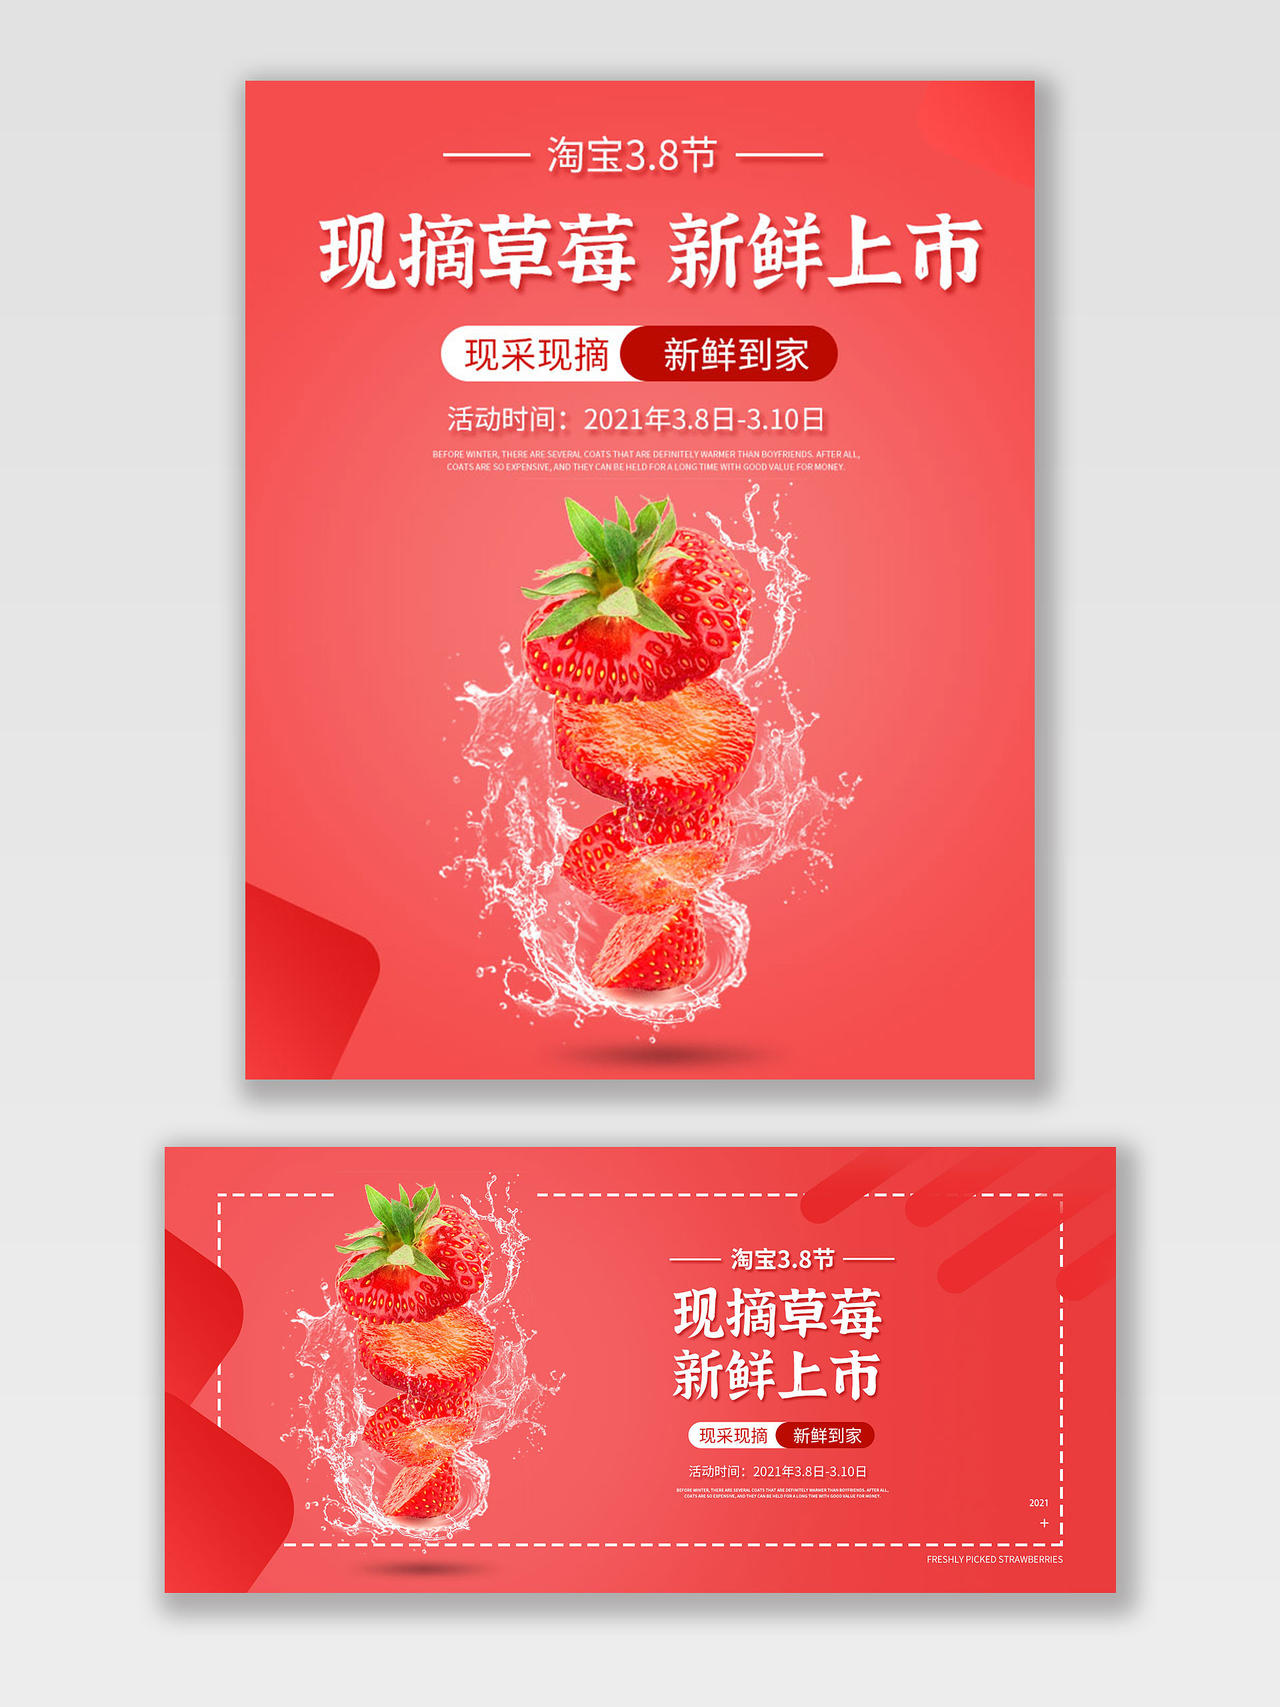 红色简约风38淘宝节草莓水果海报banner草莓海报banner